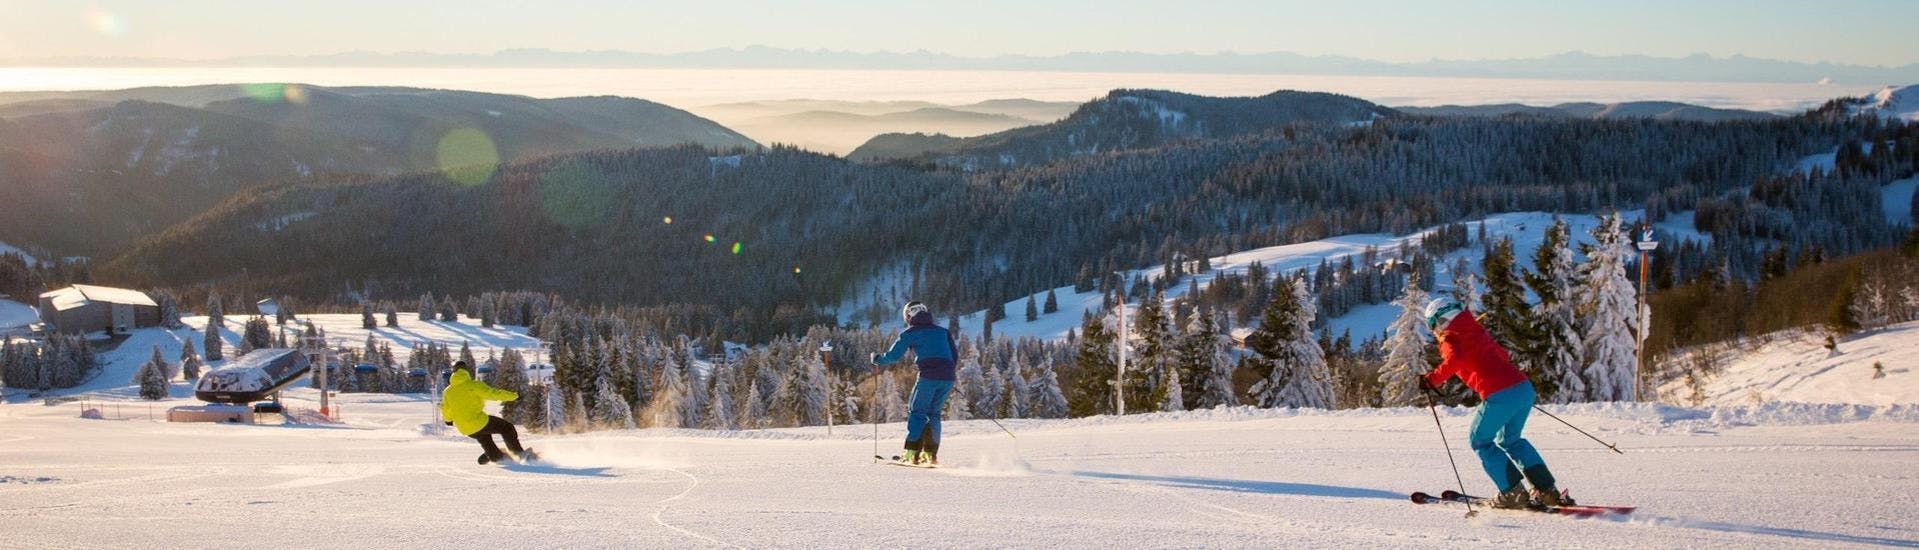 Zwei skifahrer und ein snowboarder ziehen auf der Skipiste in Feldberg, wo die örtlichen Skischulen ihre Skikurse anbieten, ihre Spuren.